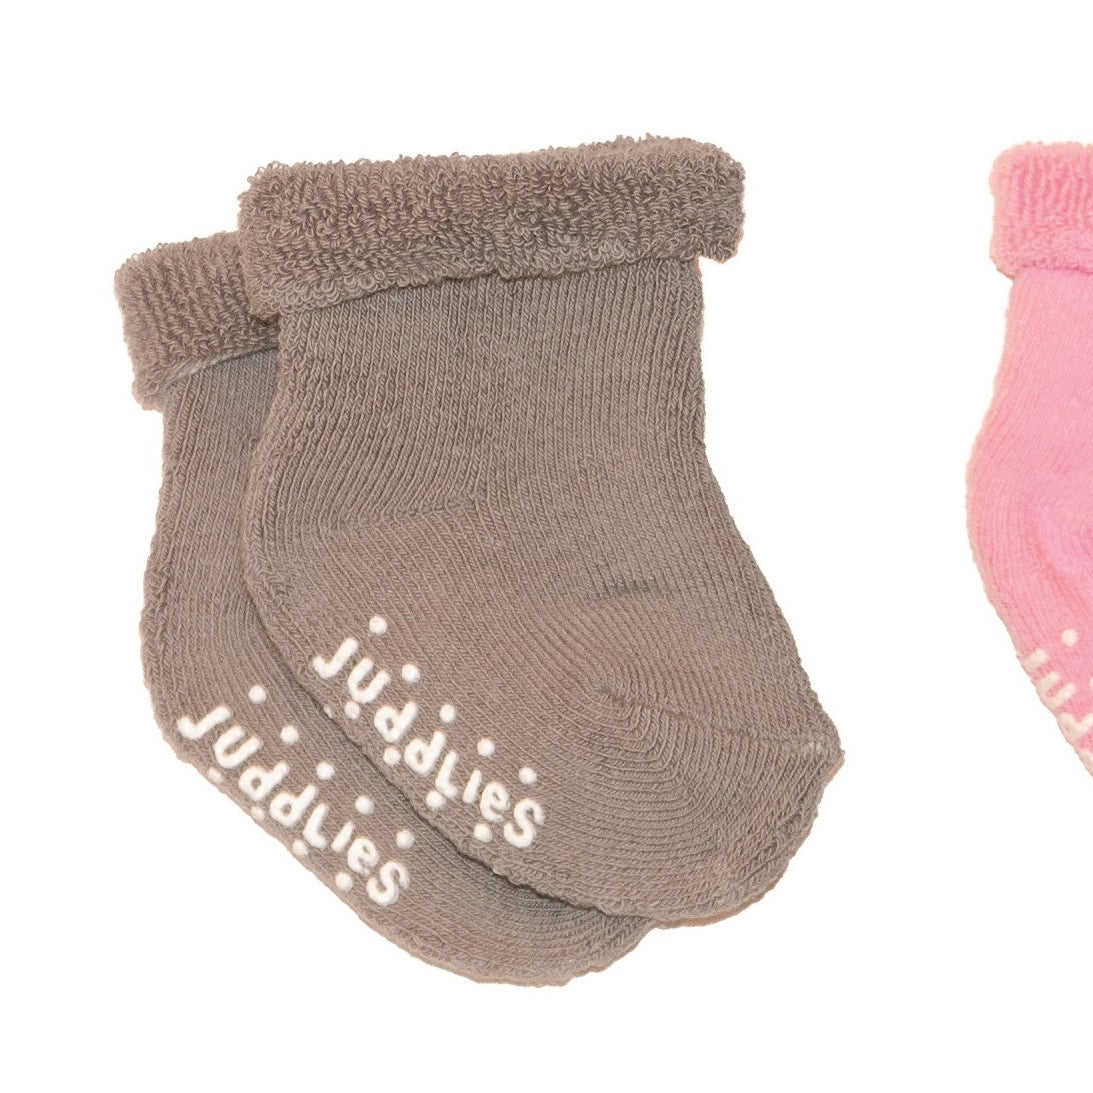 Infant Socks - 6 Pack